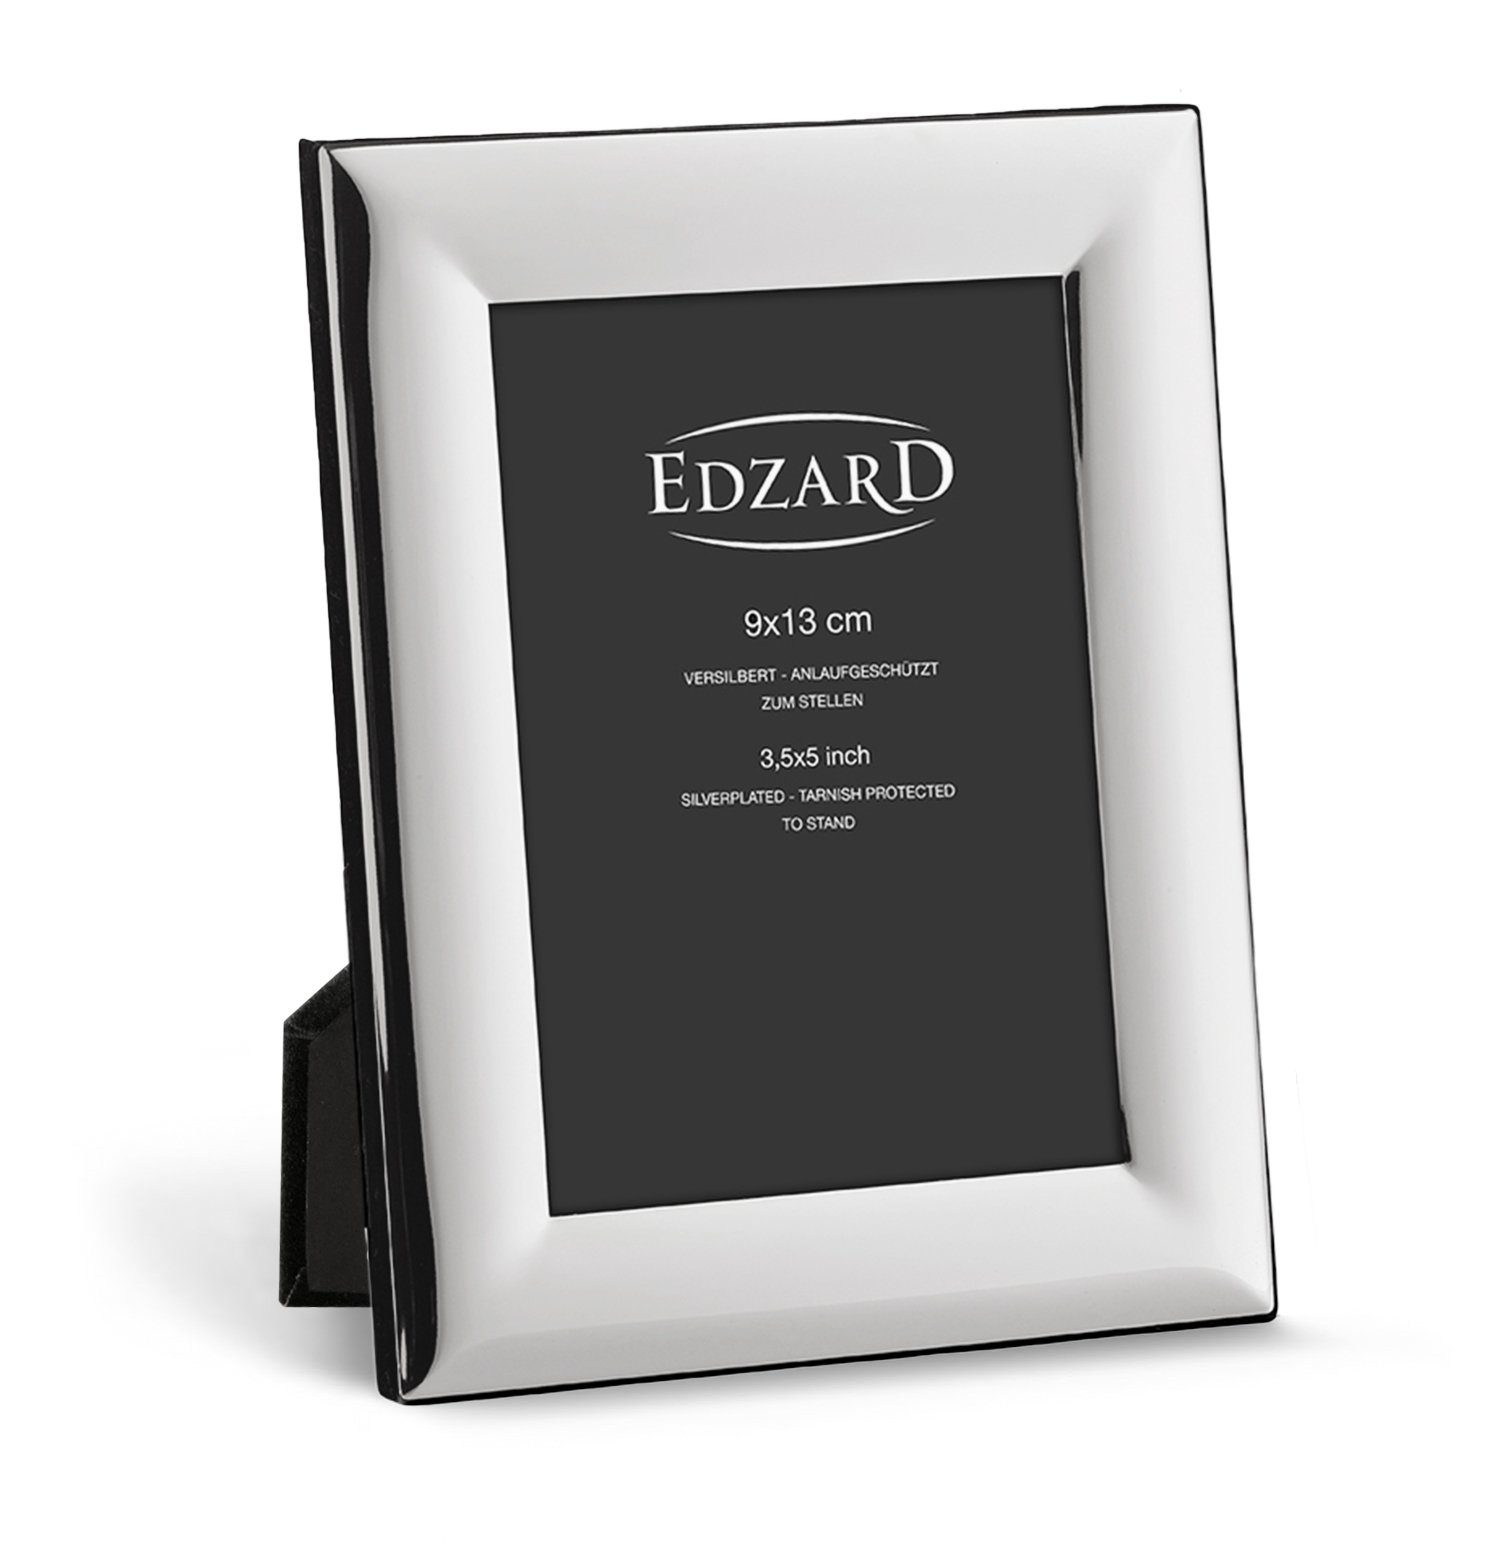 EDZARD Bilderrahmen Gela, versilbert und anlaufgeschützt, für 9x13 cm Foto | Einzelrahmen